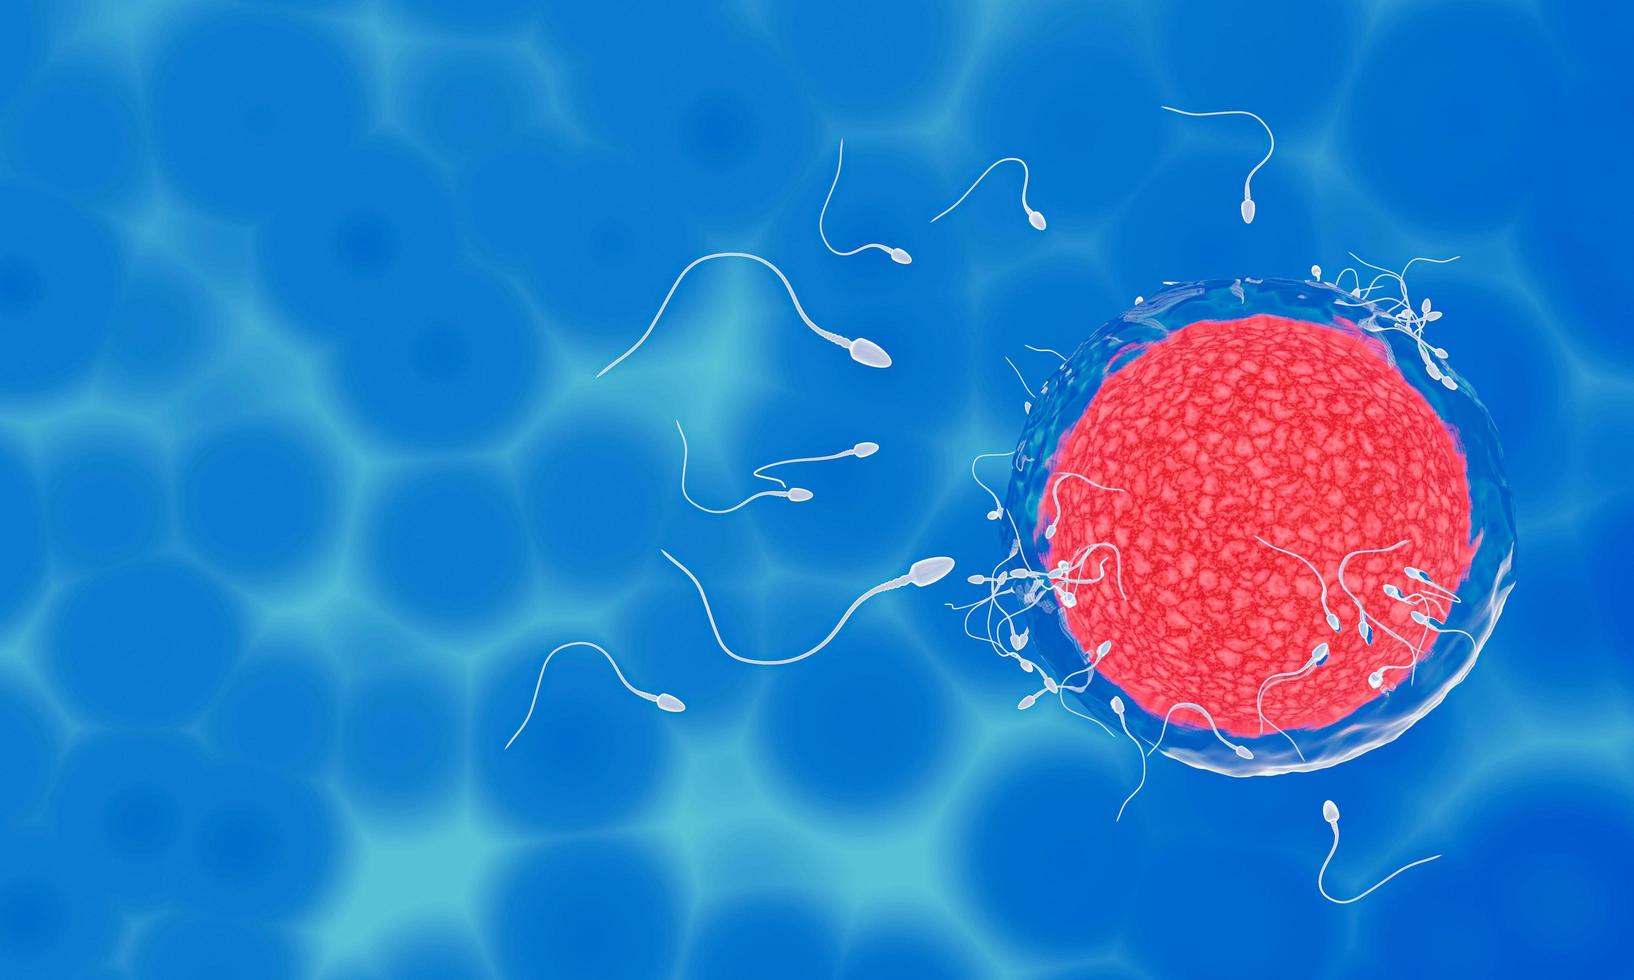 spermierna riktas mot ägget. att göra mänsklig parning. en förbefruktningsmodell mellan ett ägg och en spermie. 3d-rendering foto